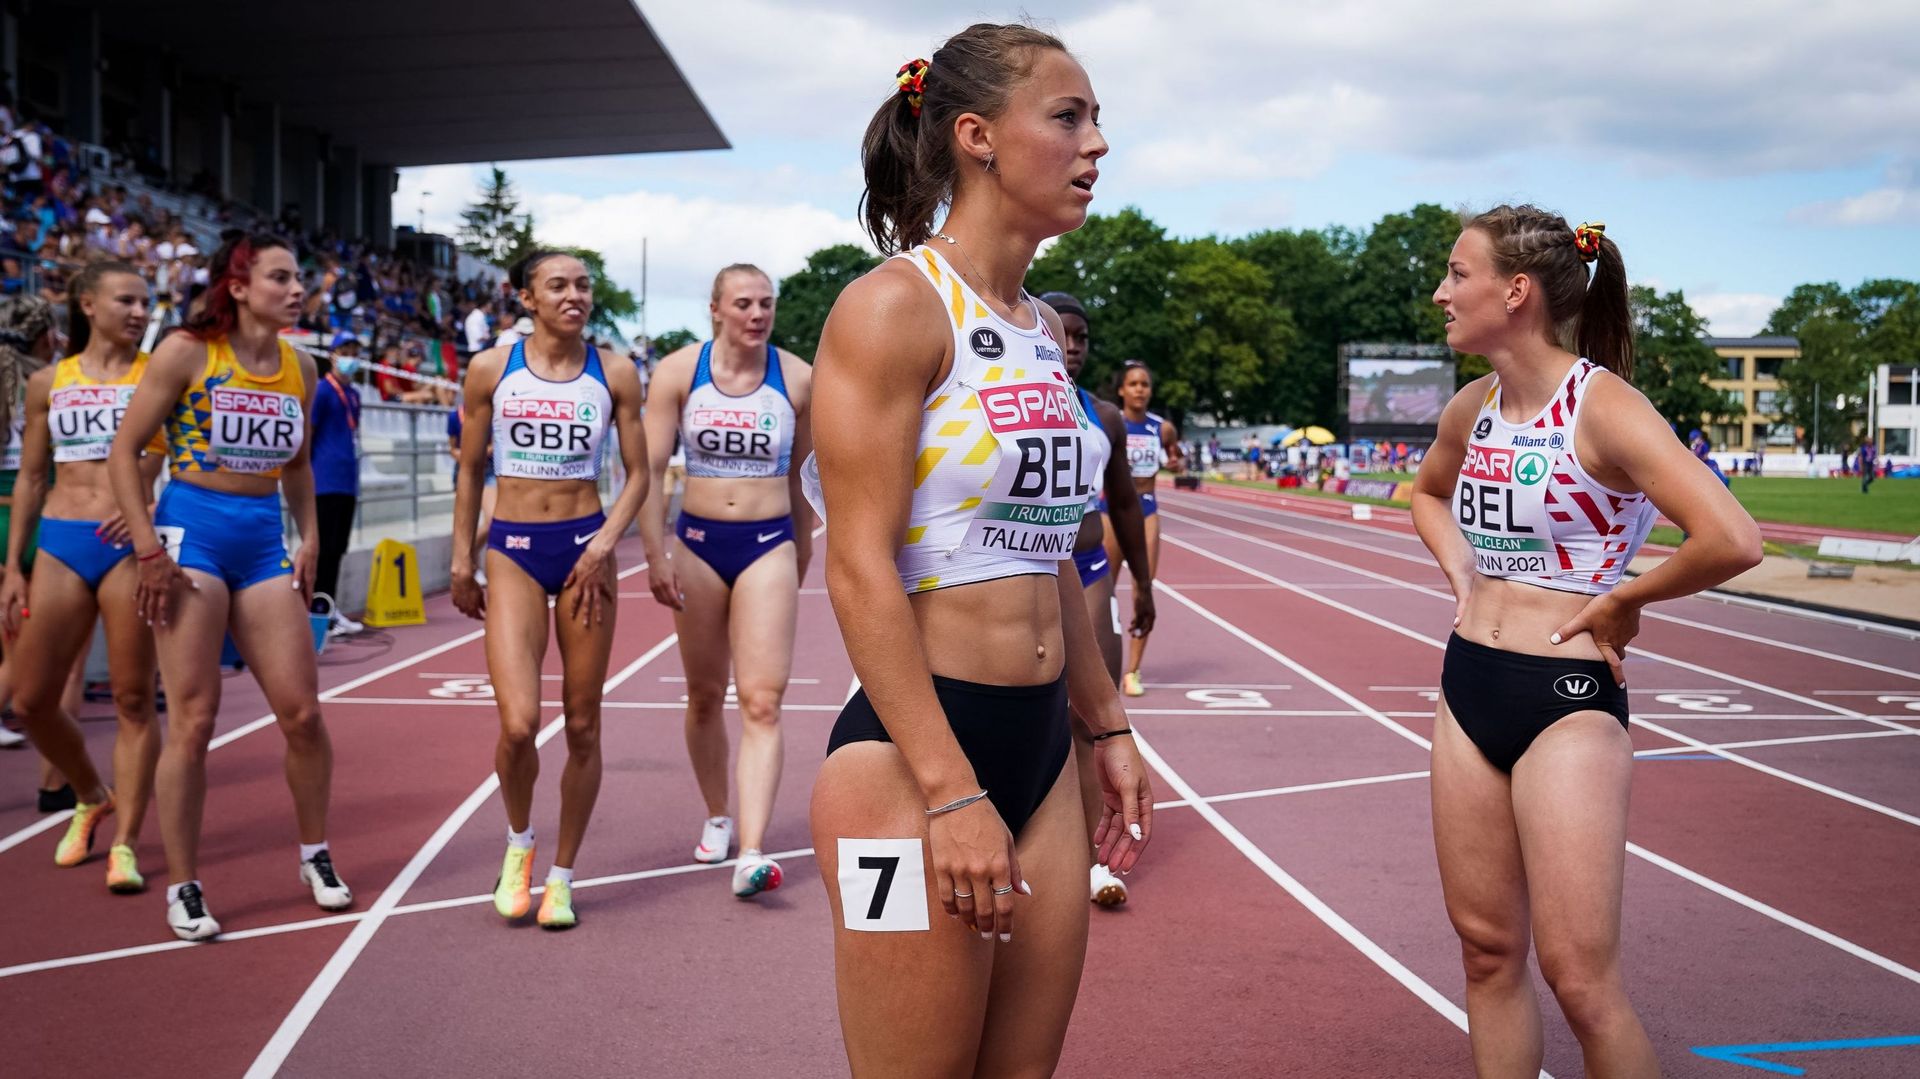 Le relais 4x100 mètres féminin ne disputera pas la finale des Championnats d’Europe d’athlétisme U23. La Belgique a été disqualifiée en séries dimanche matin à Tallinn, en Estonie.